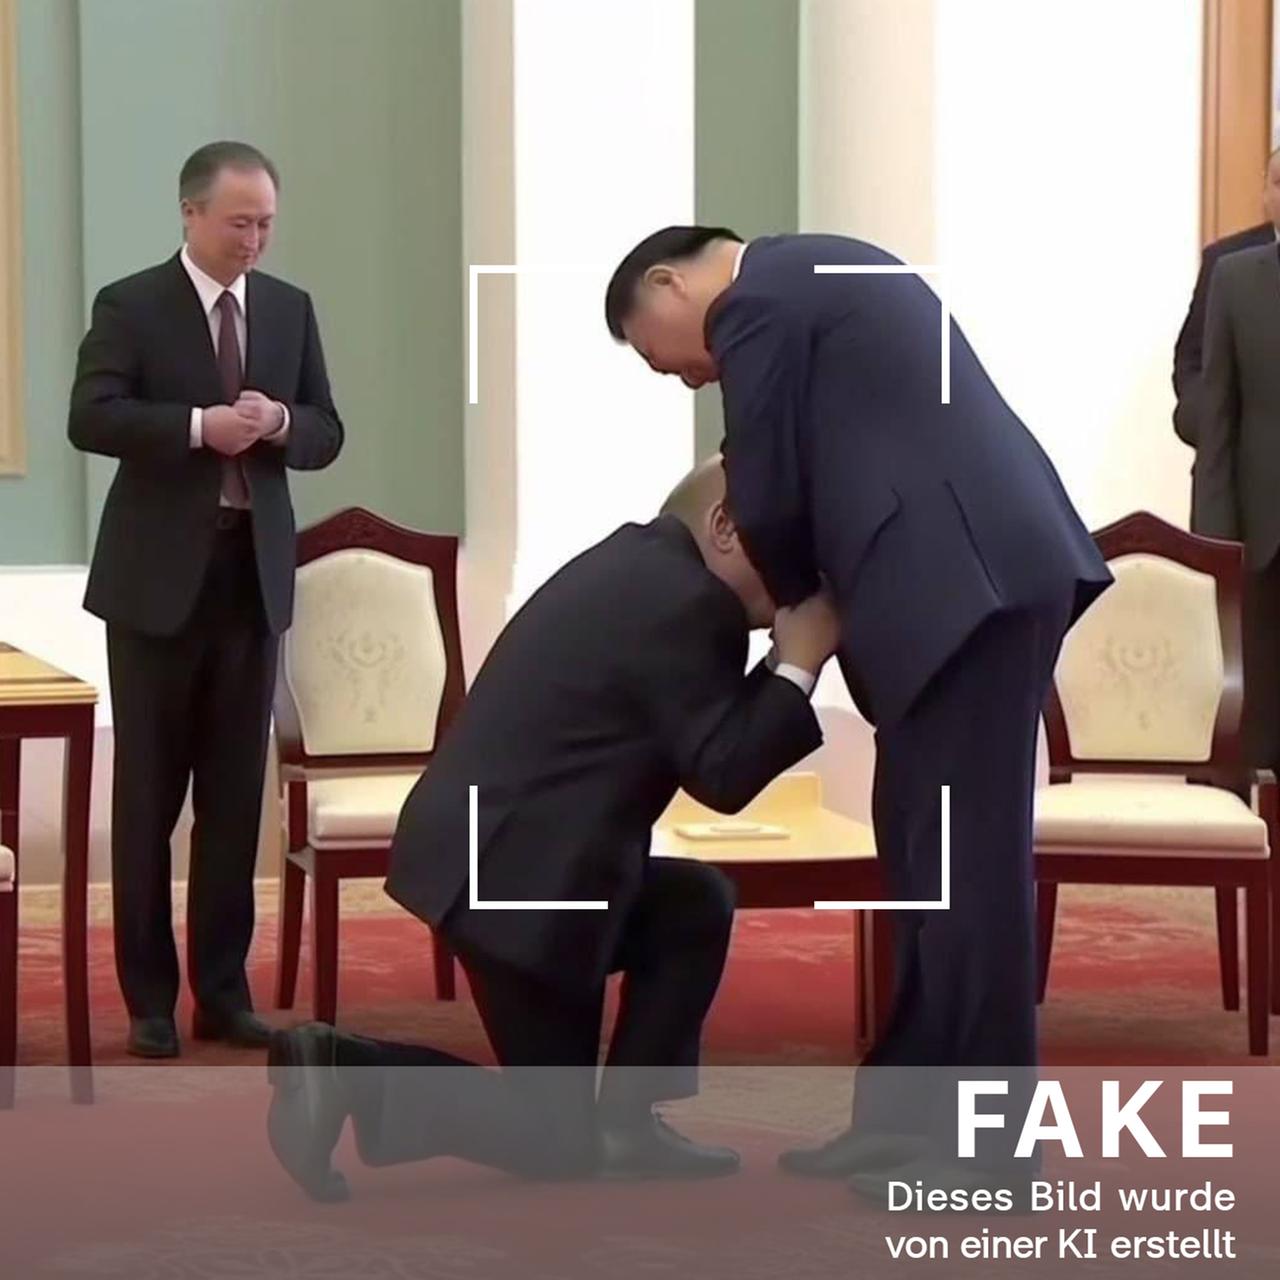 FAKE - Von einer KI erstelltes Bild: Kniefall von Putin vor Xi